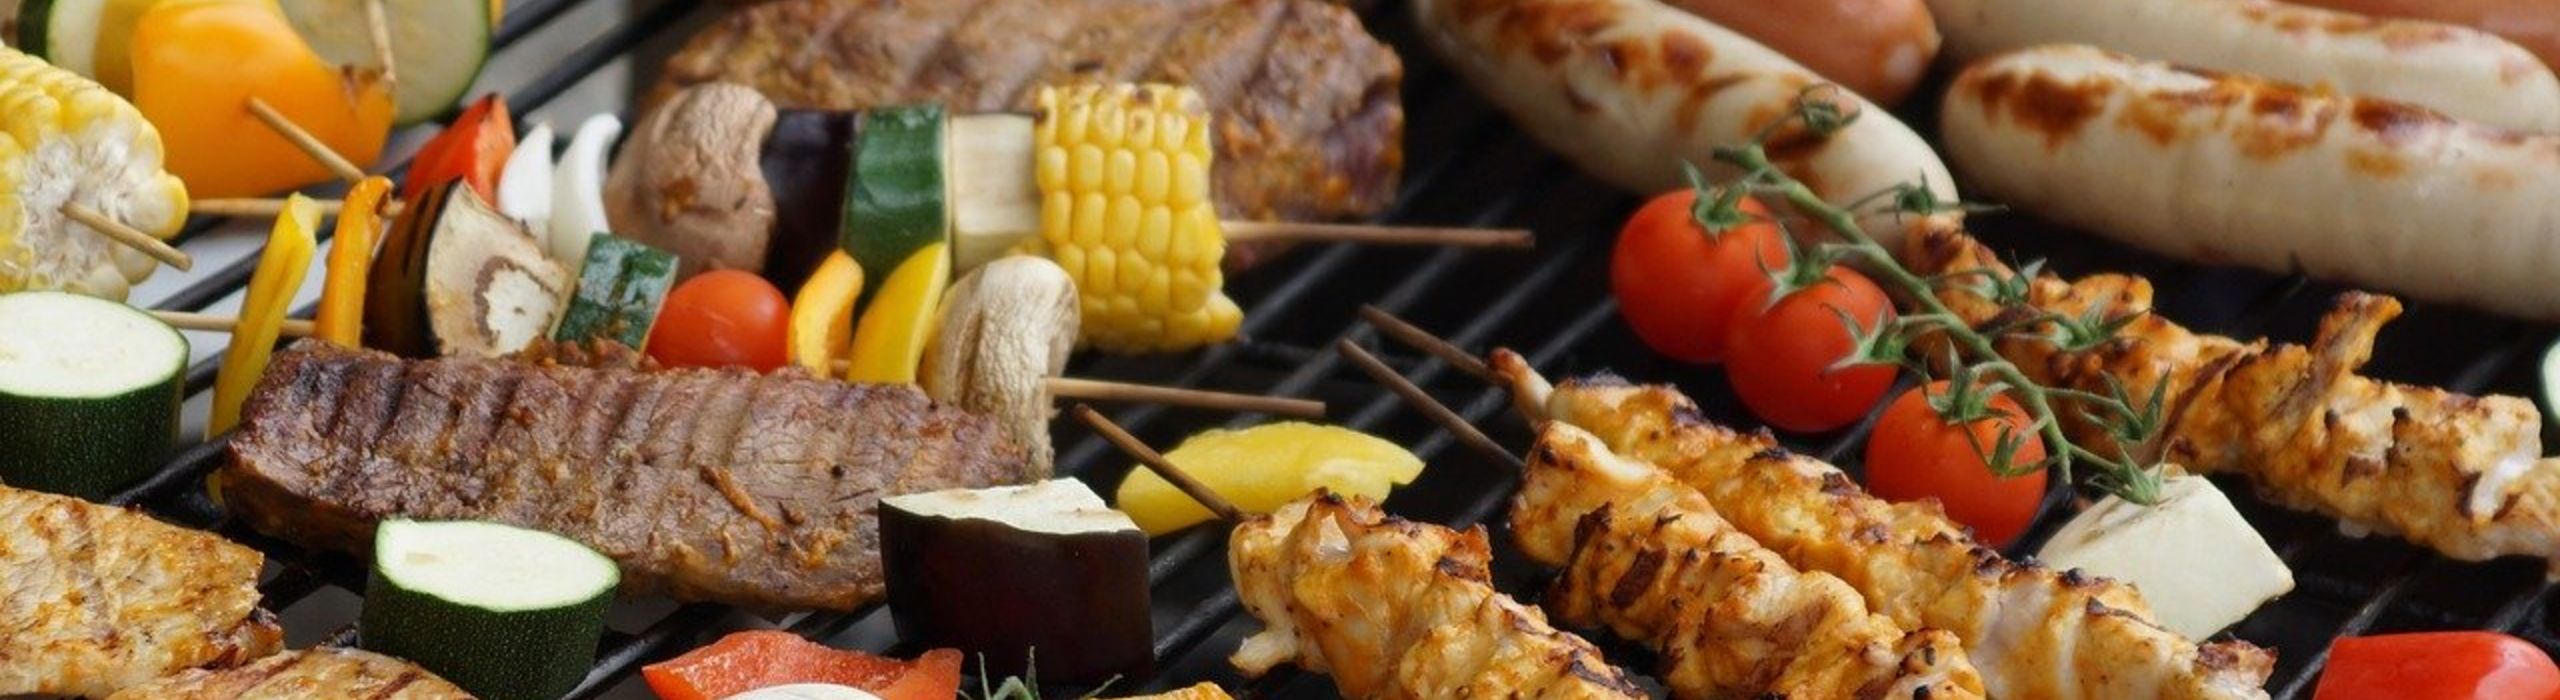 Develey BBQ: Grillgemuese, Fleisch, wurst